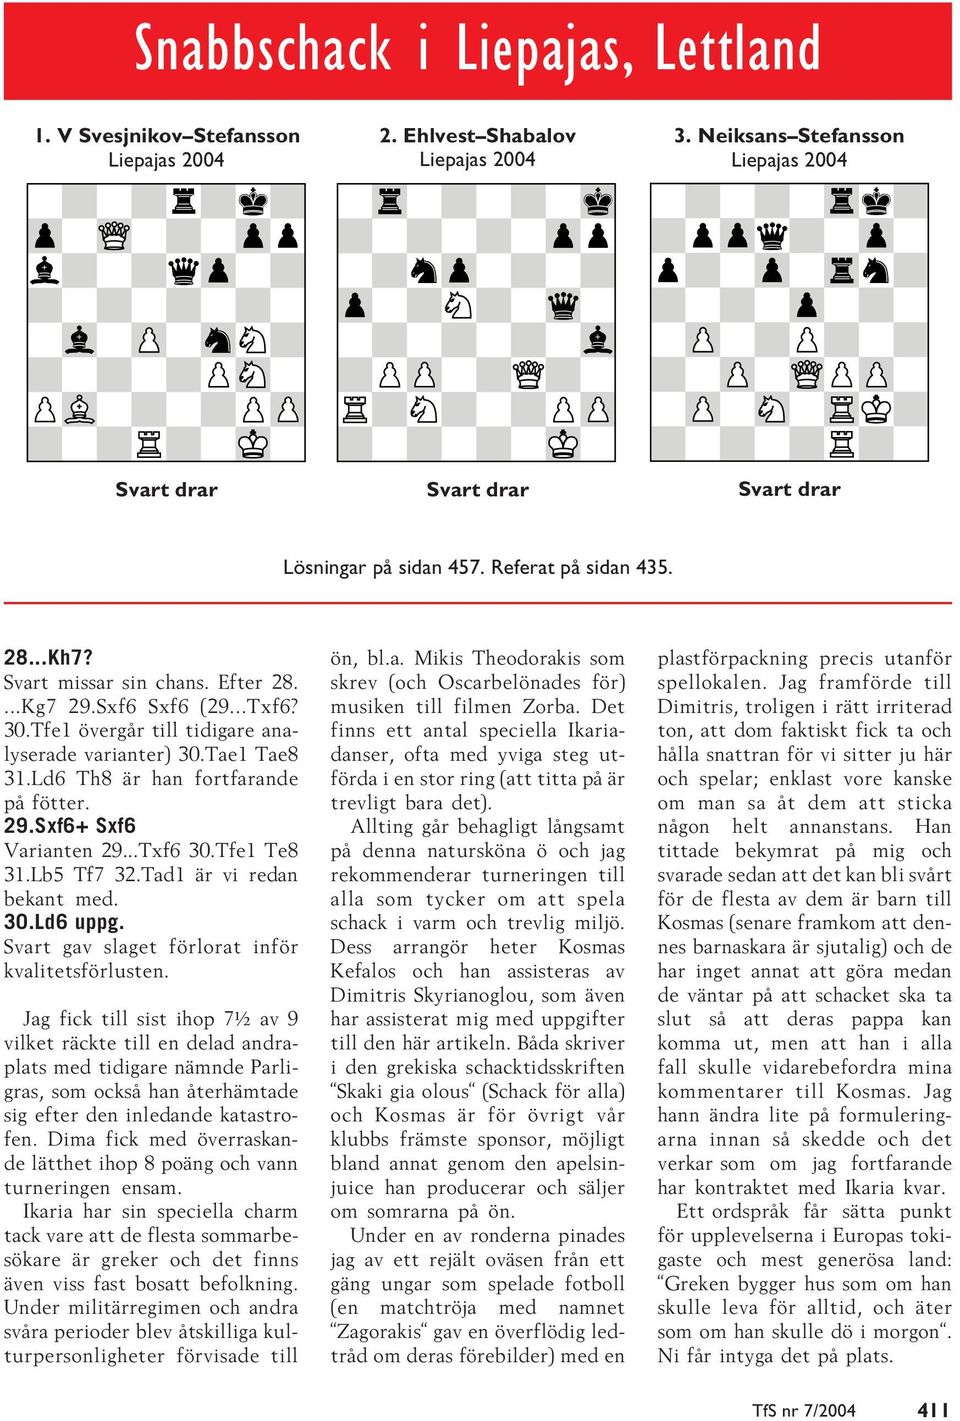 Tfe1 övergår till tidigare analyserade varianter) 30.Tae1 Tae8 31.Ld6 Th8 är han fortfarande på fötter. 29.Sxf6+ Sxf6 Varianten 29...Txf6 30.Tfe1 Te8 31.Lb5 Tf7 32.Tad1 är vi redan bekant med. 30.Ld6 uppg.